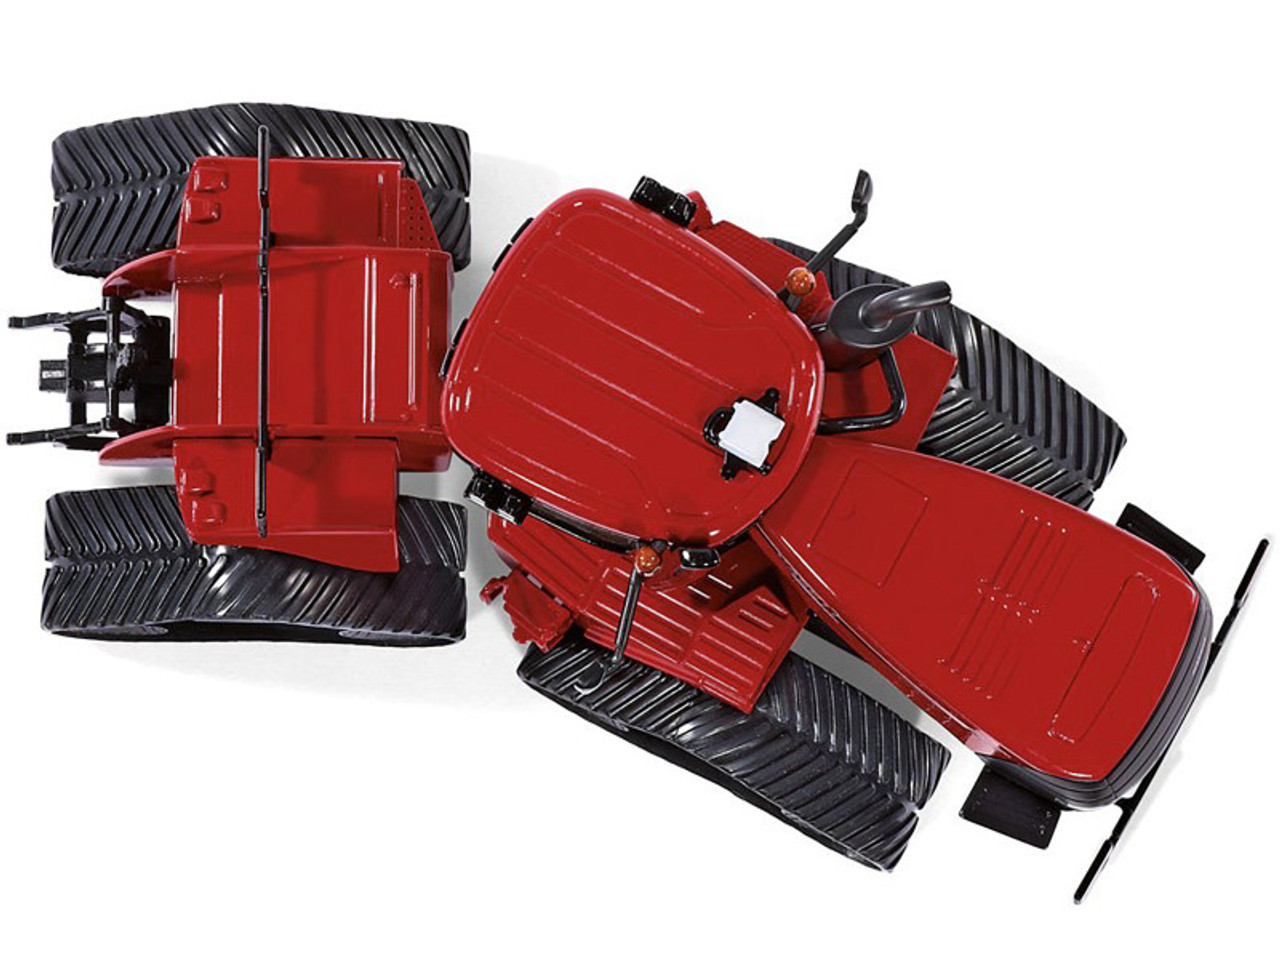 Case IH Quadtrac 600 Tractor Red 1/32 Diecast Model by Siku